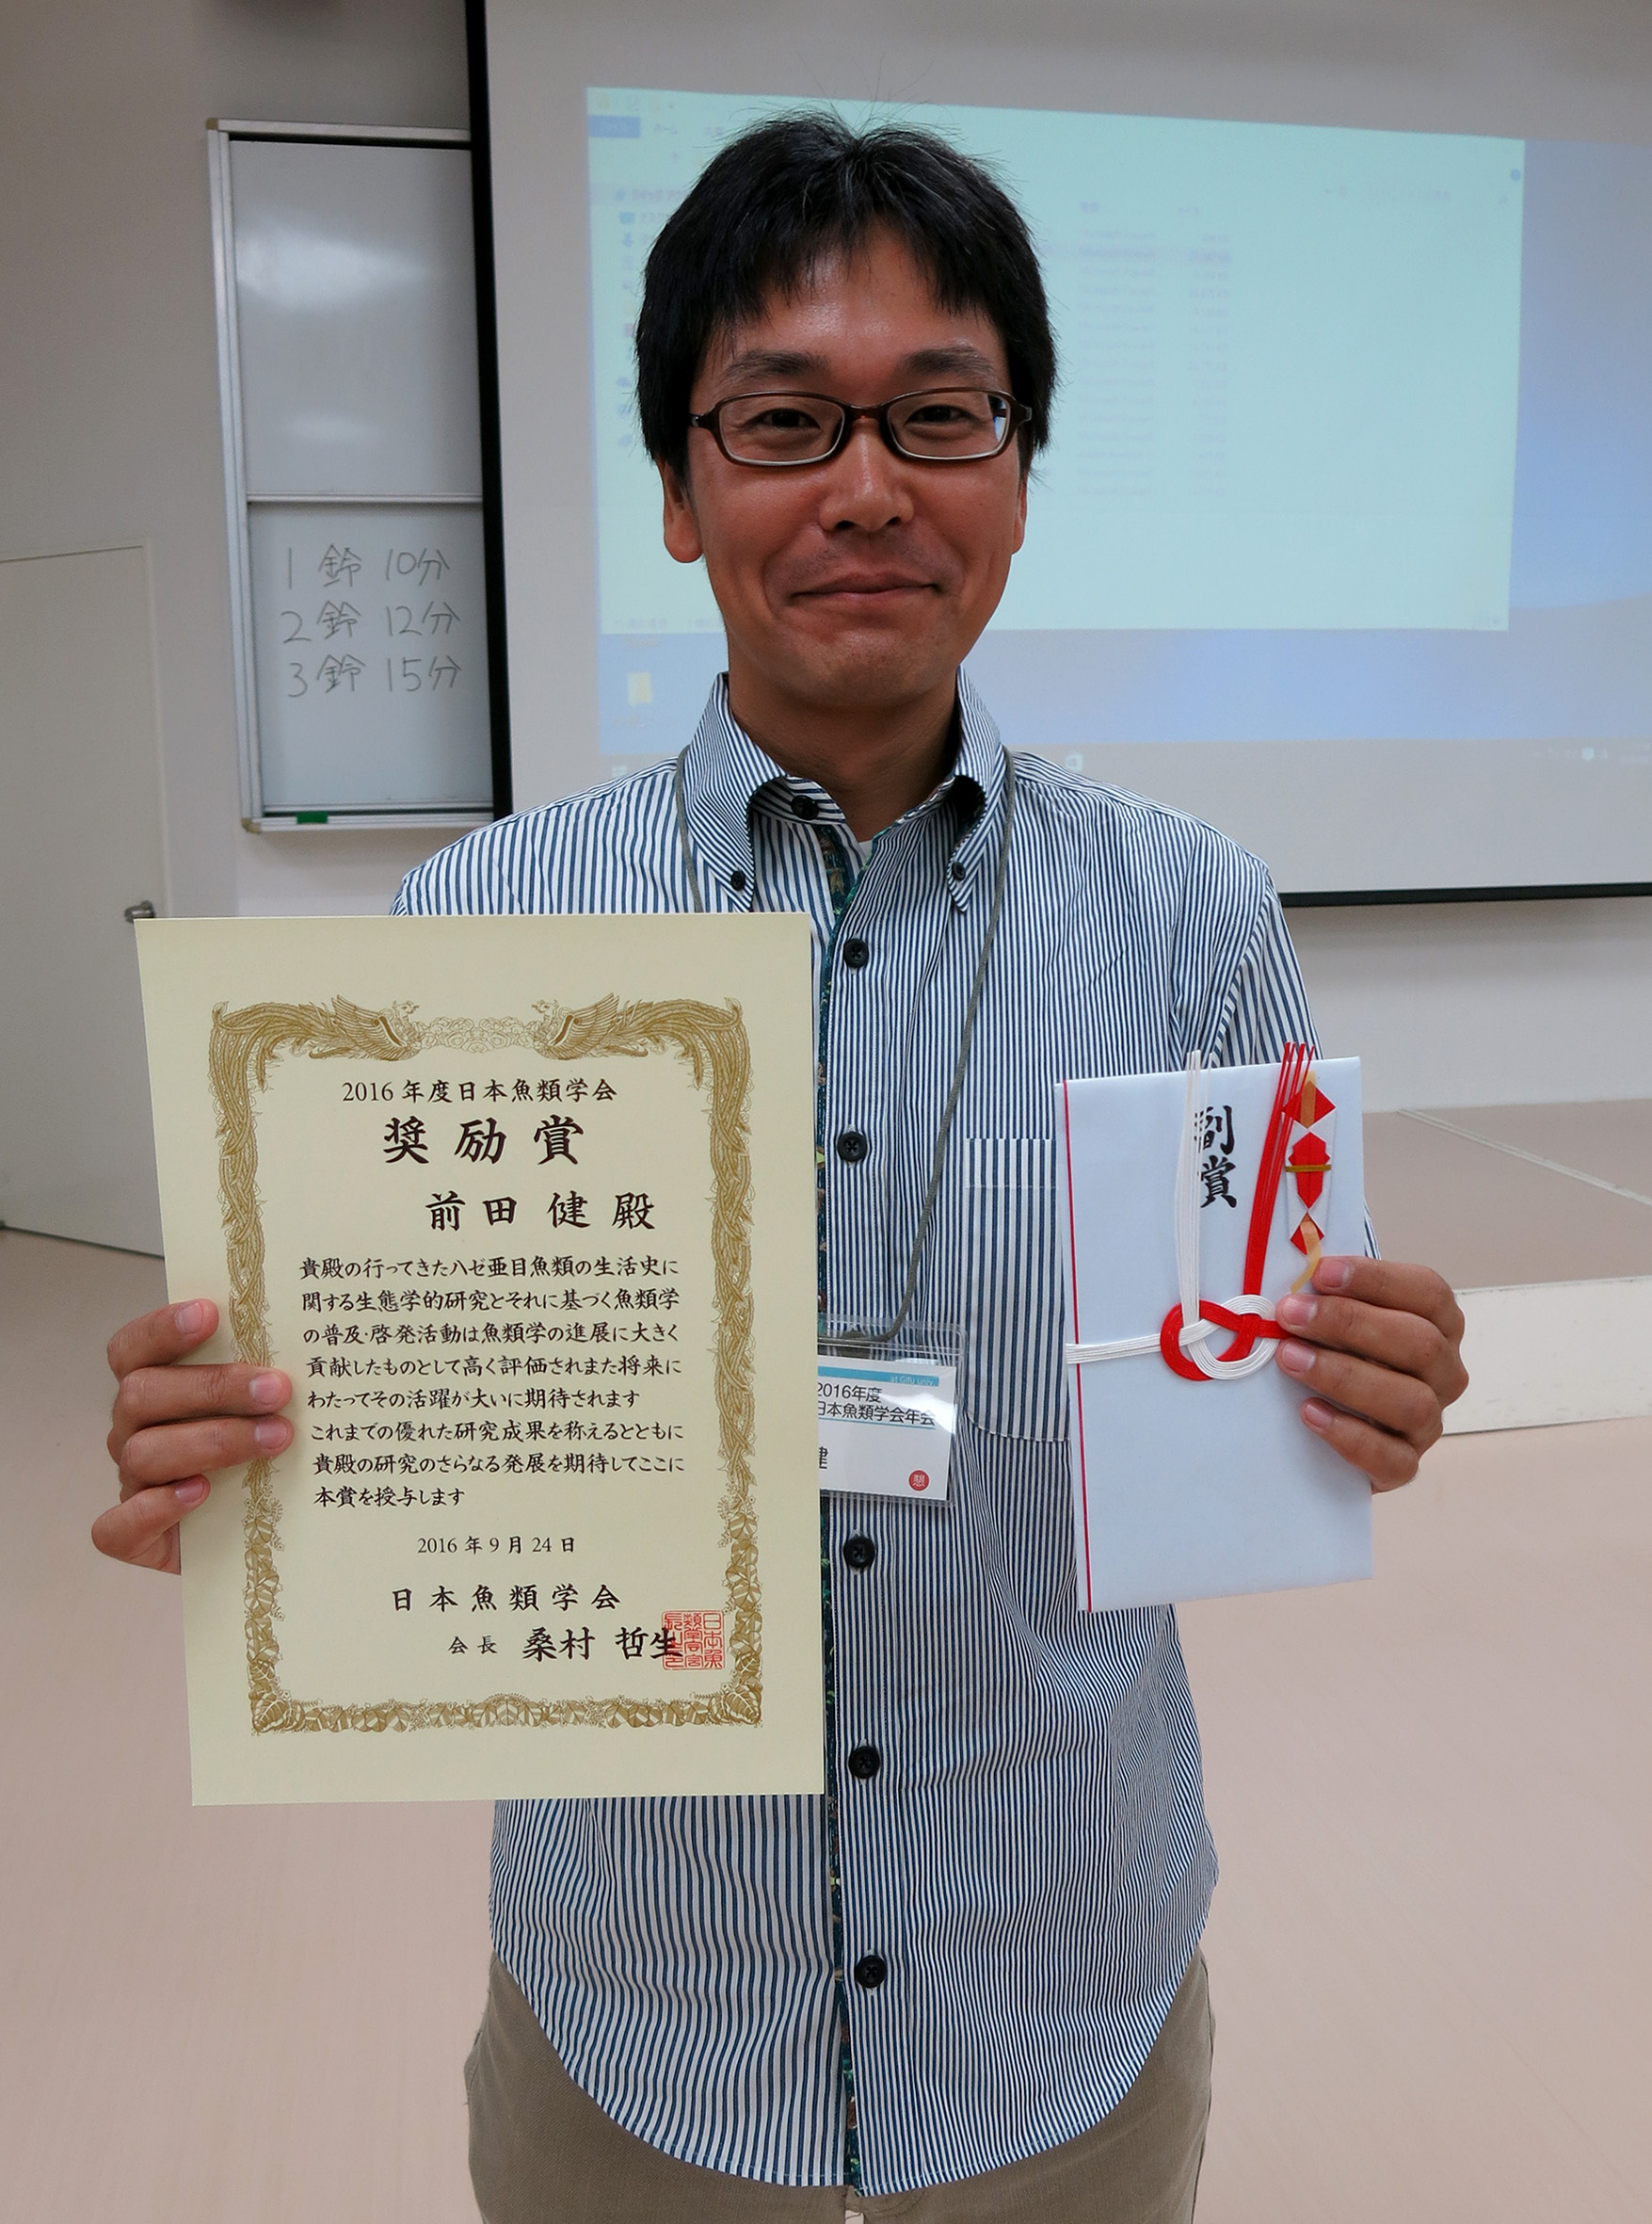 2016年9月24日、OISTマリンゲノミックスユニット前田健博士が日本魚類学会より奨励賞を受賞しました。